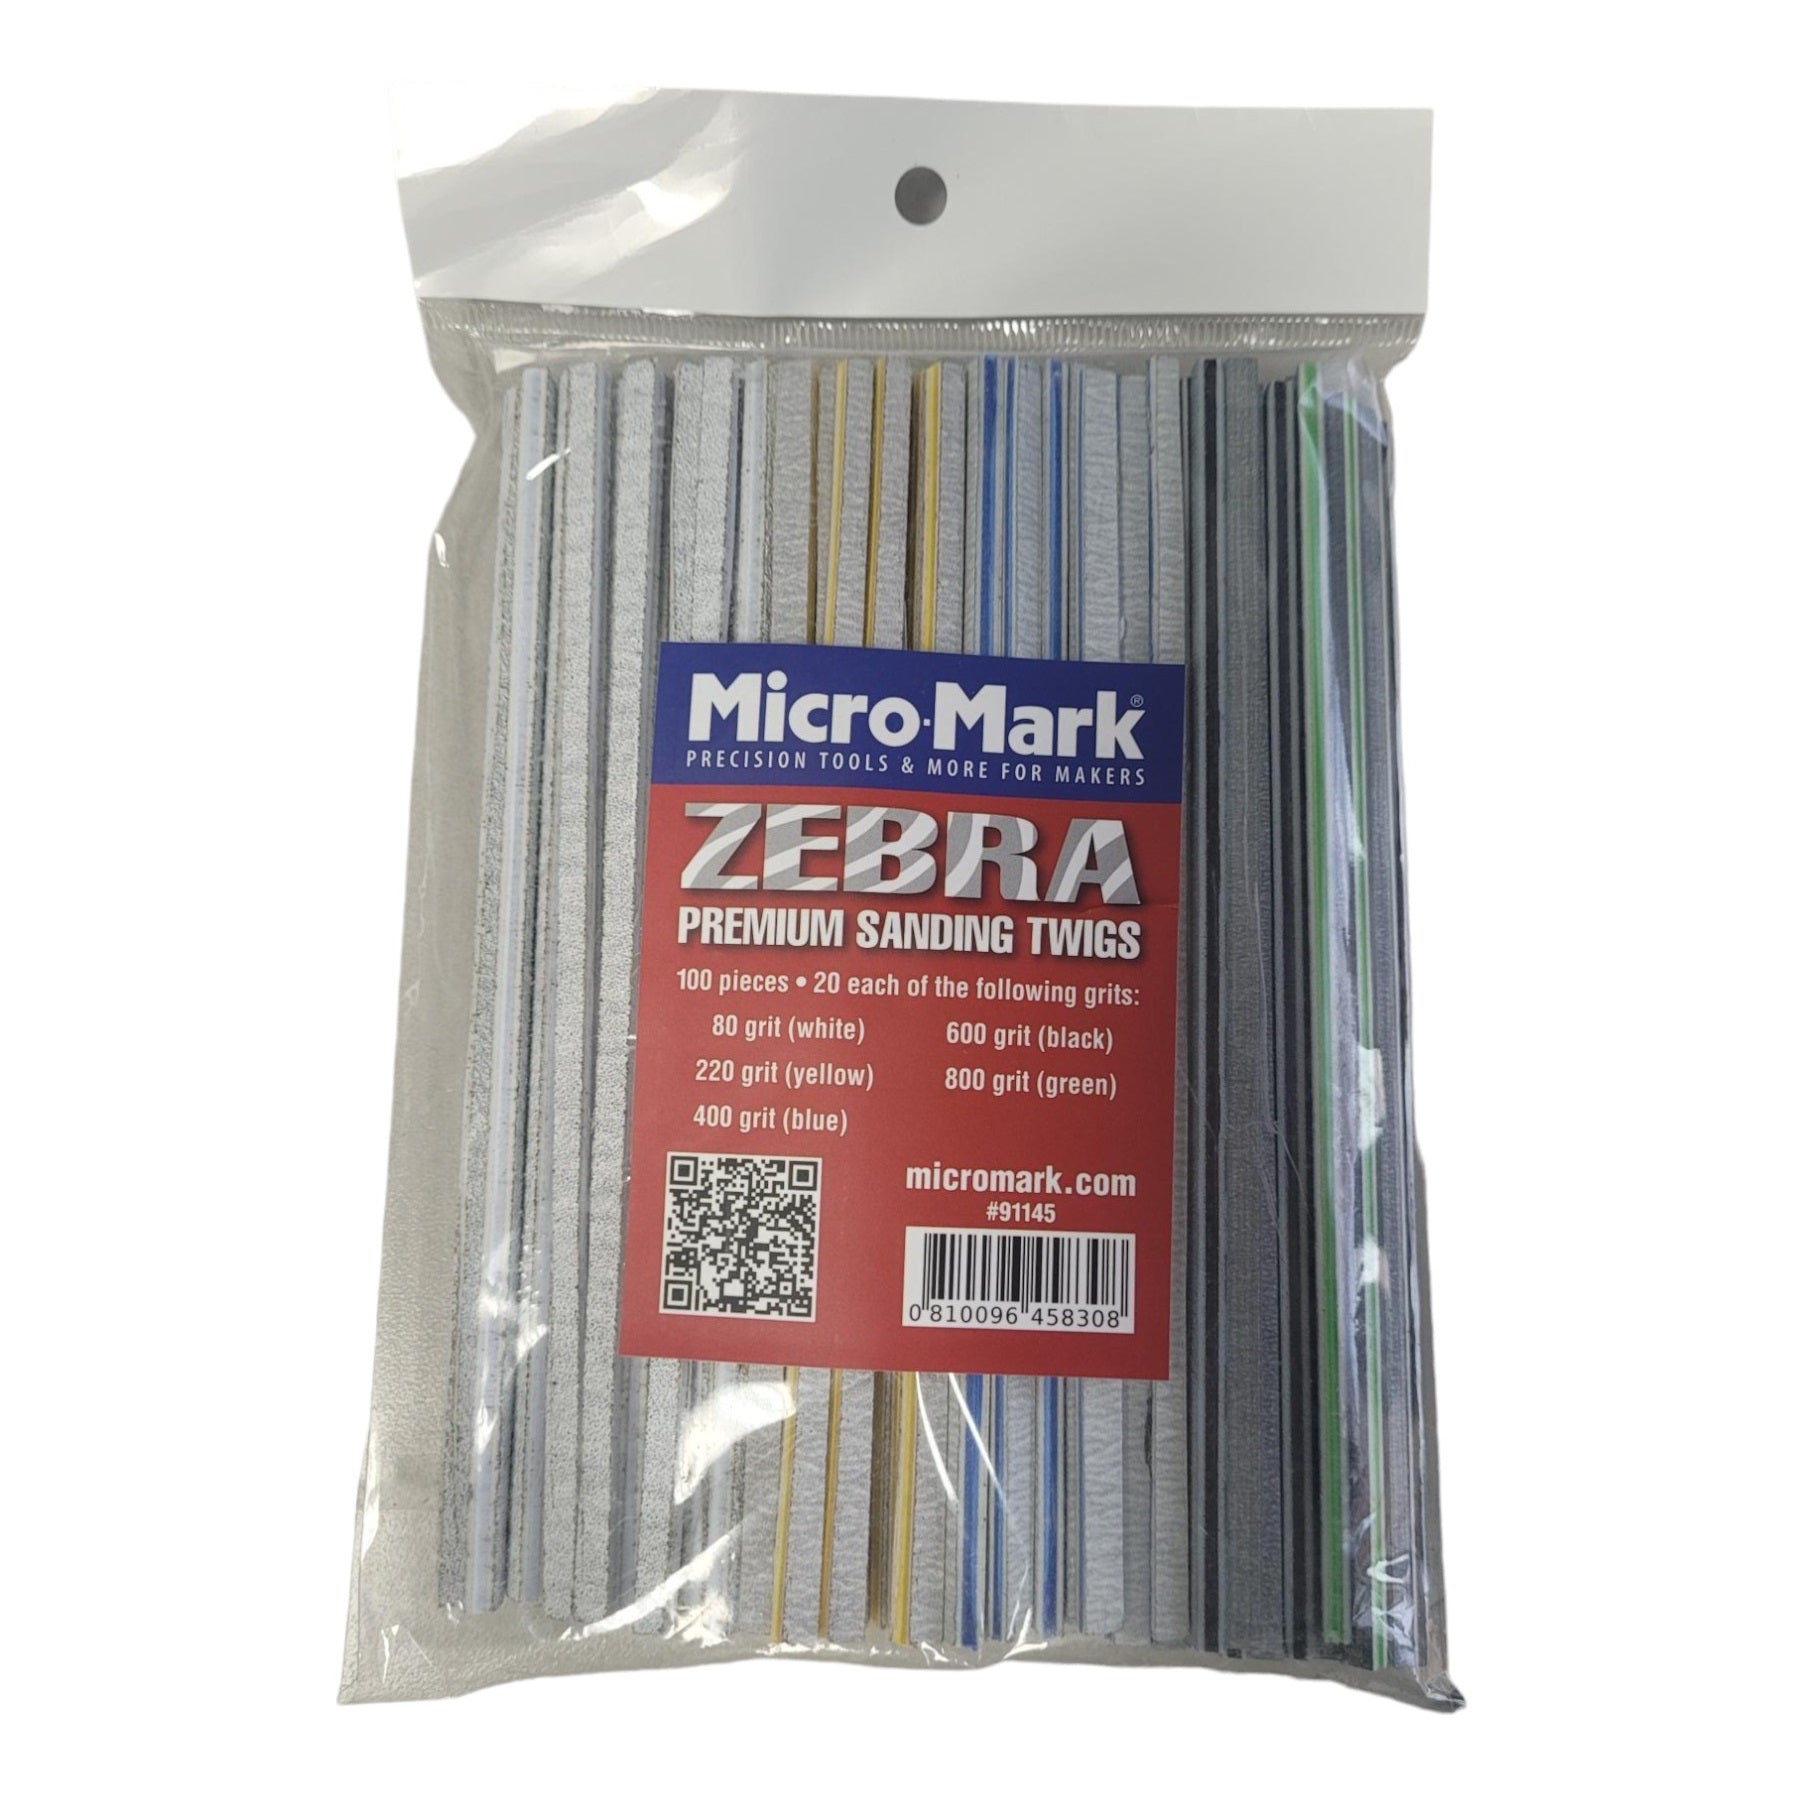 Micro - Mark Zebra Premium Sanding Twigs 100 Pieces